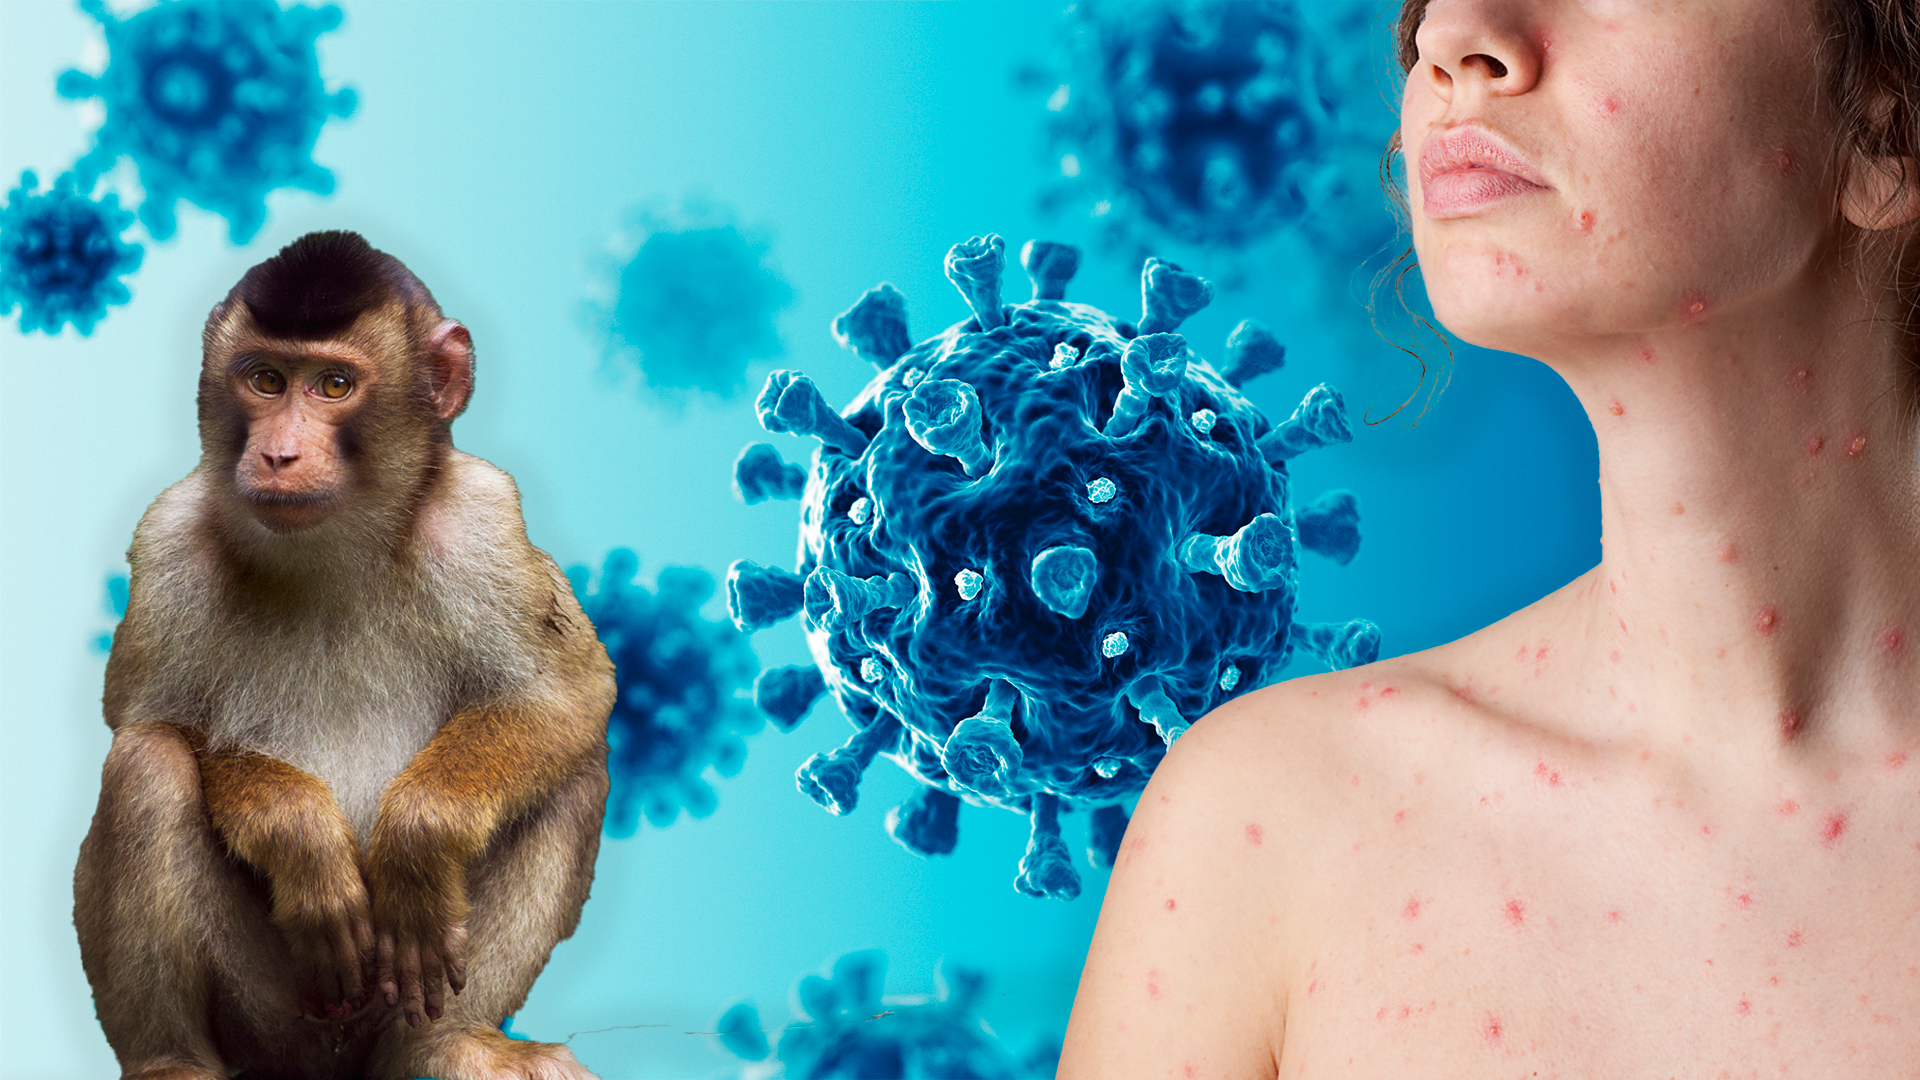 La viruela del mono -que fue detectada por primera vez en el ser humano en 1970- es menos peligrosa y contagiosa que su prima la viruela, erradicada en 1980